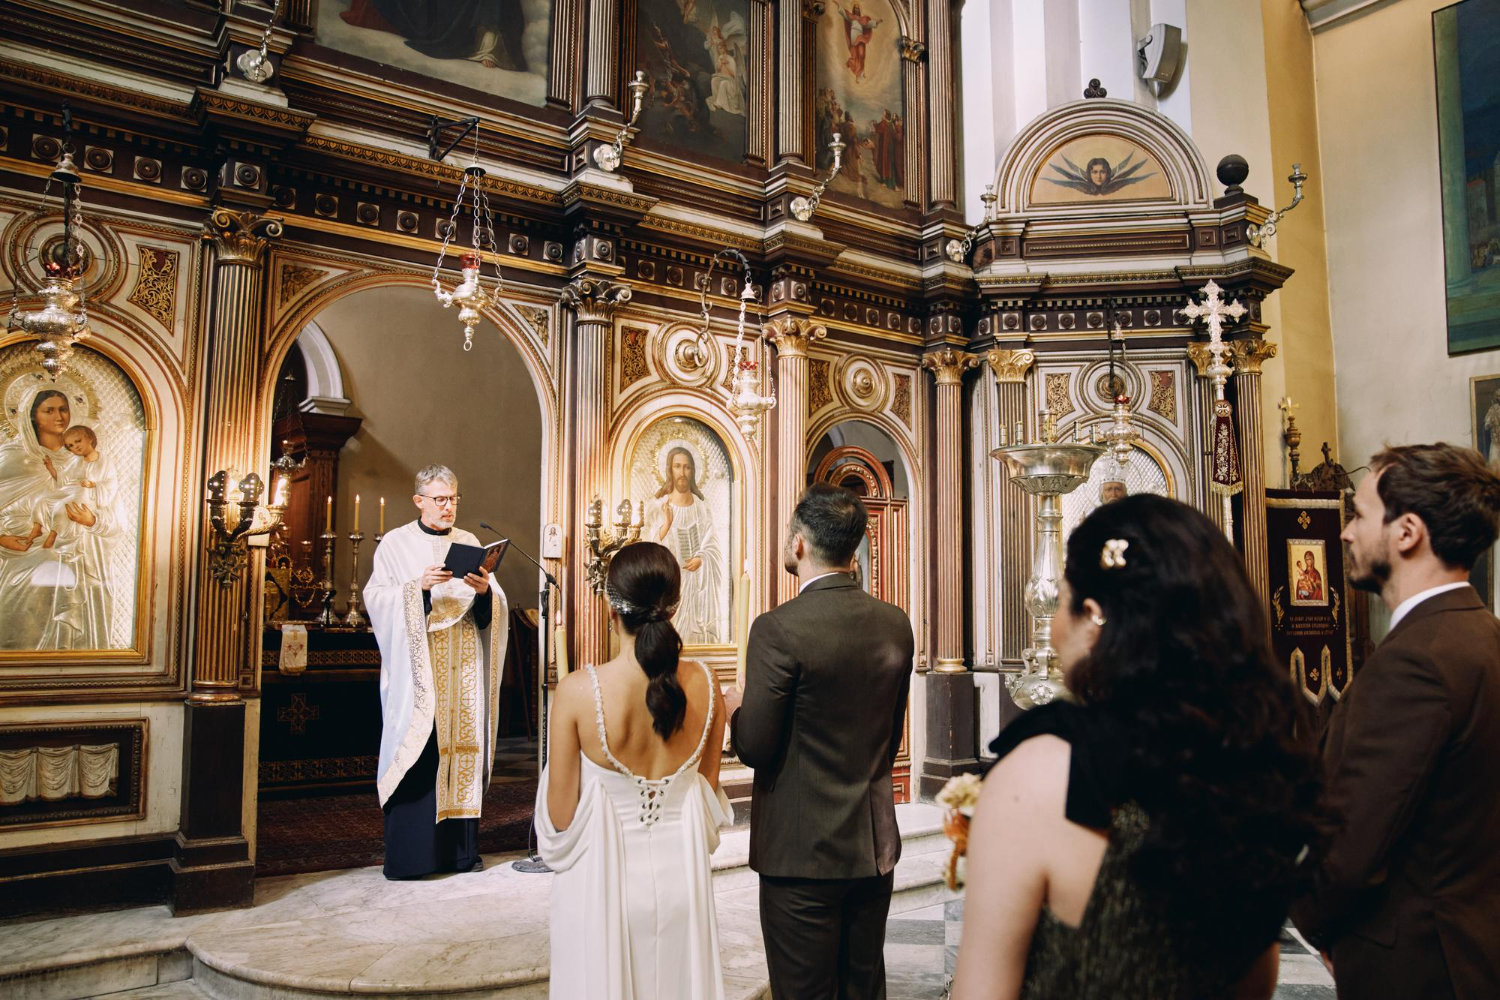 Na zdjęciu drużba i druhna stoją za parą młodą przed księdzem w ikonostasie.